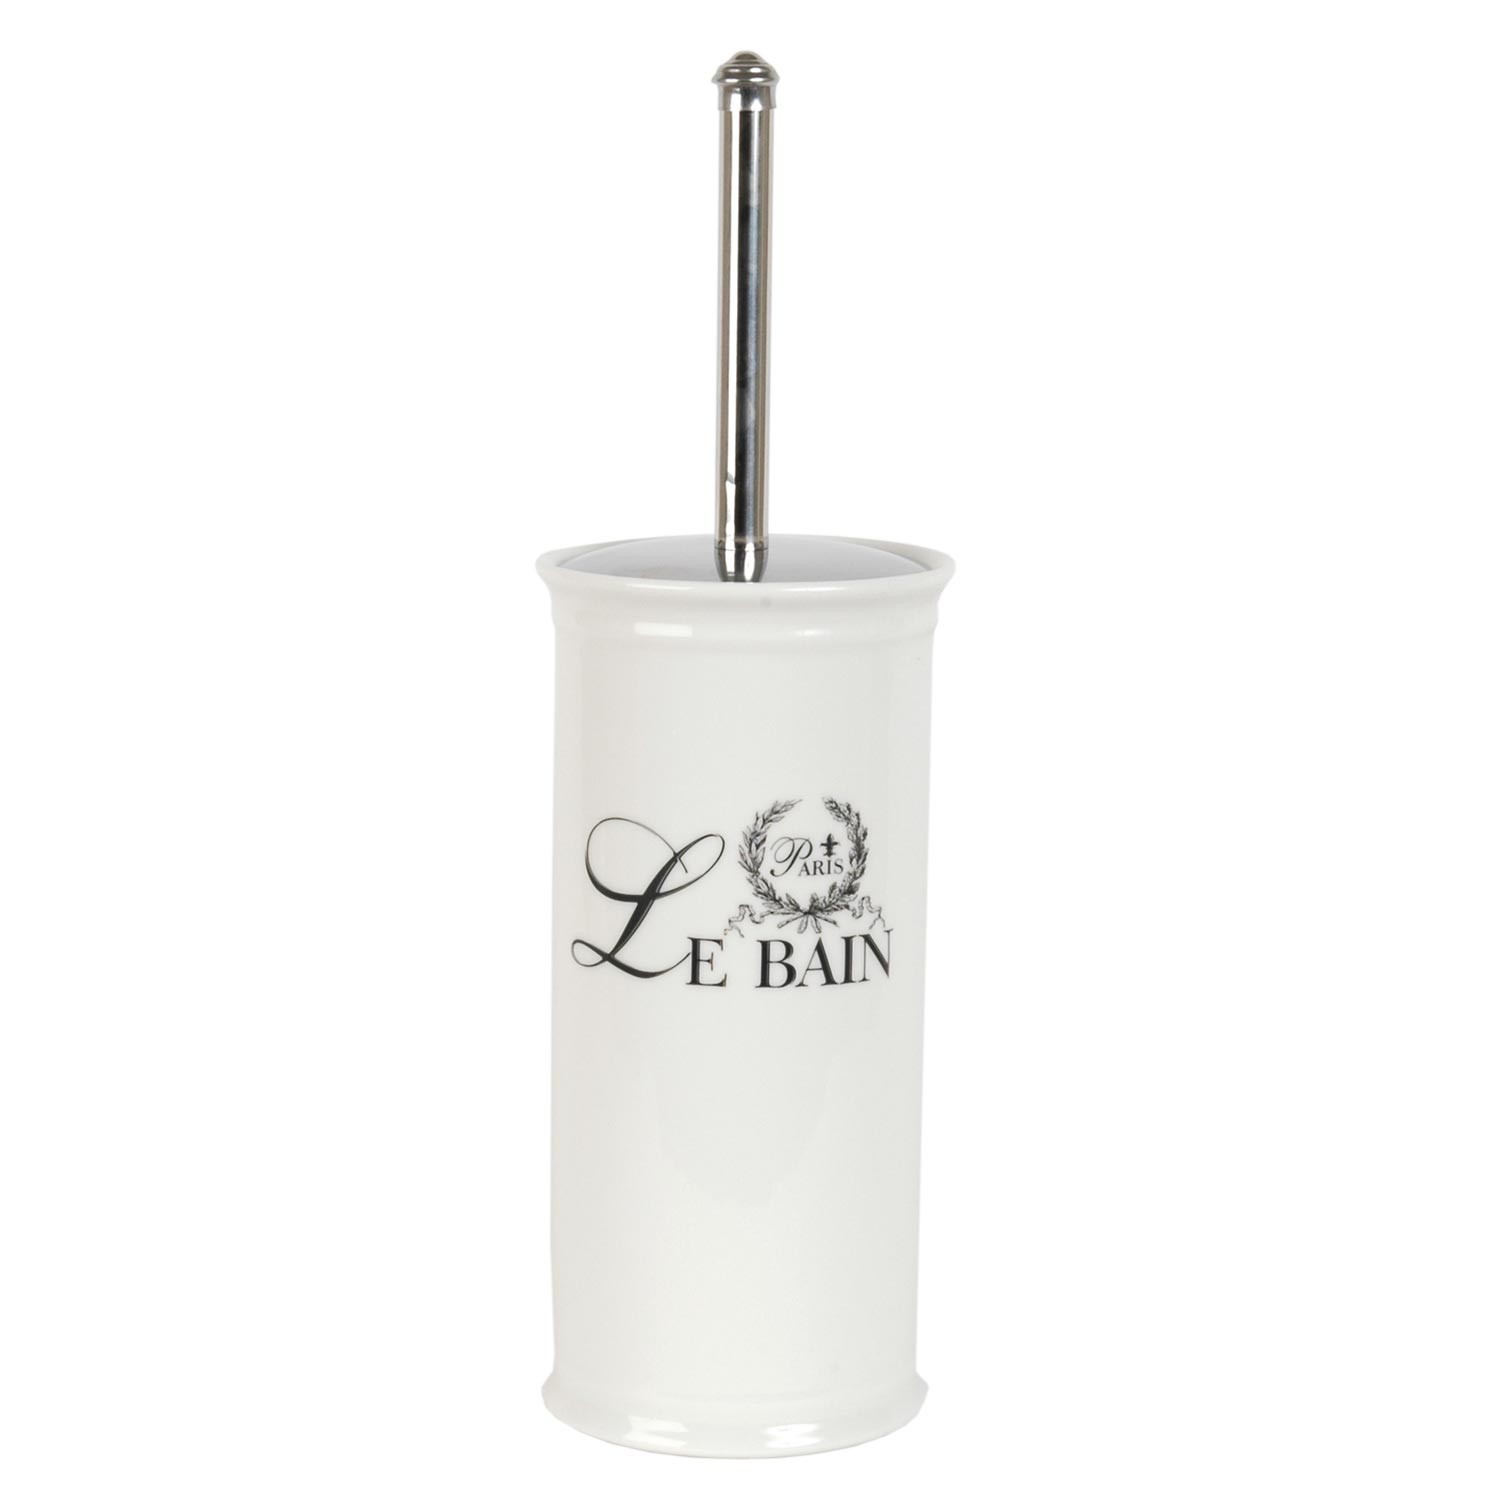 WC kartáč s nádobou Le Bain - Ø 11*24 cm  Clayre & Eef